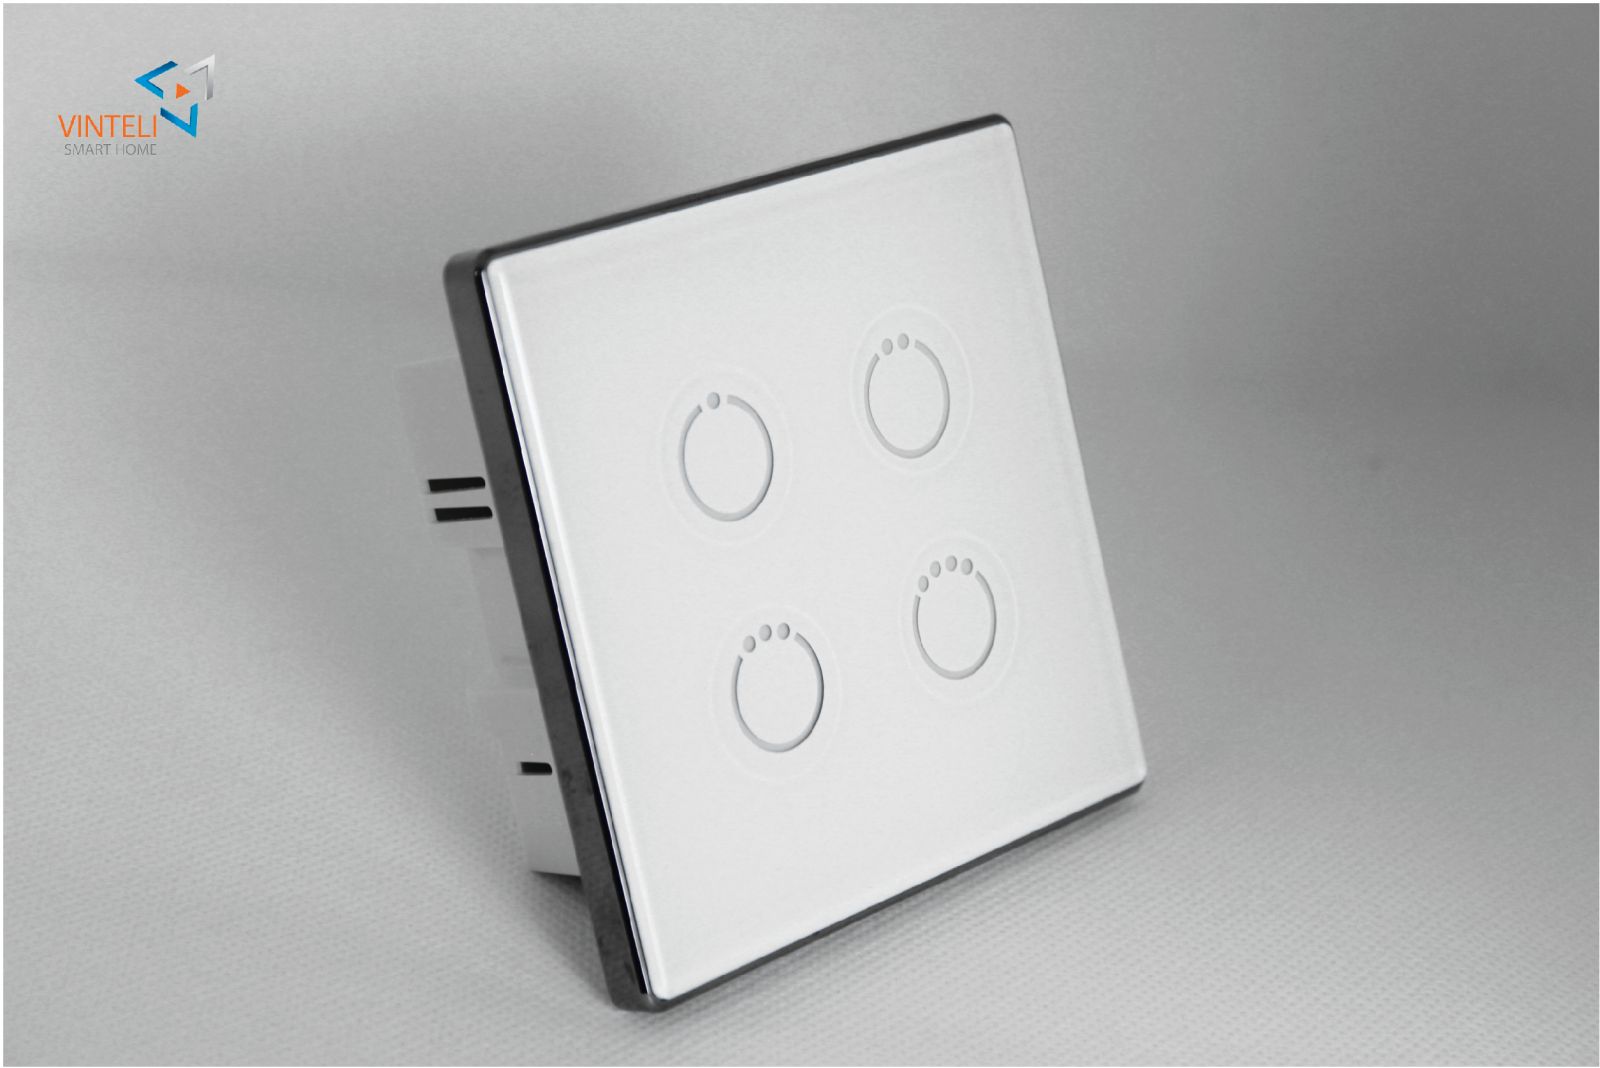 Công tắc cảm ứng Vinteli Smart Home phiên bản 4 nút